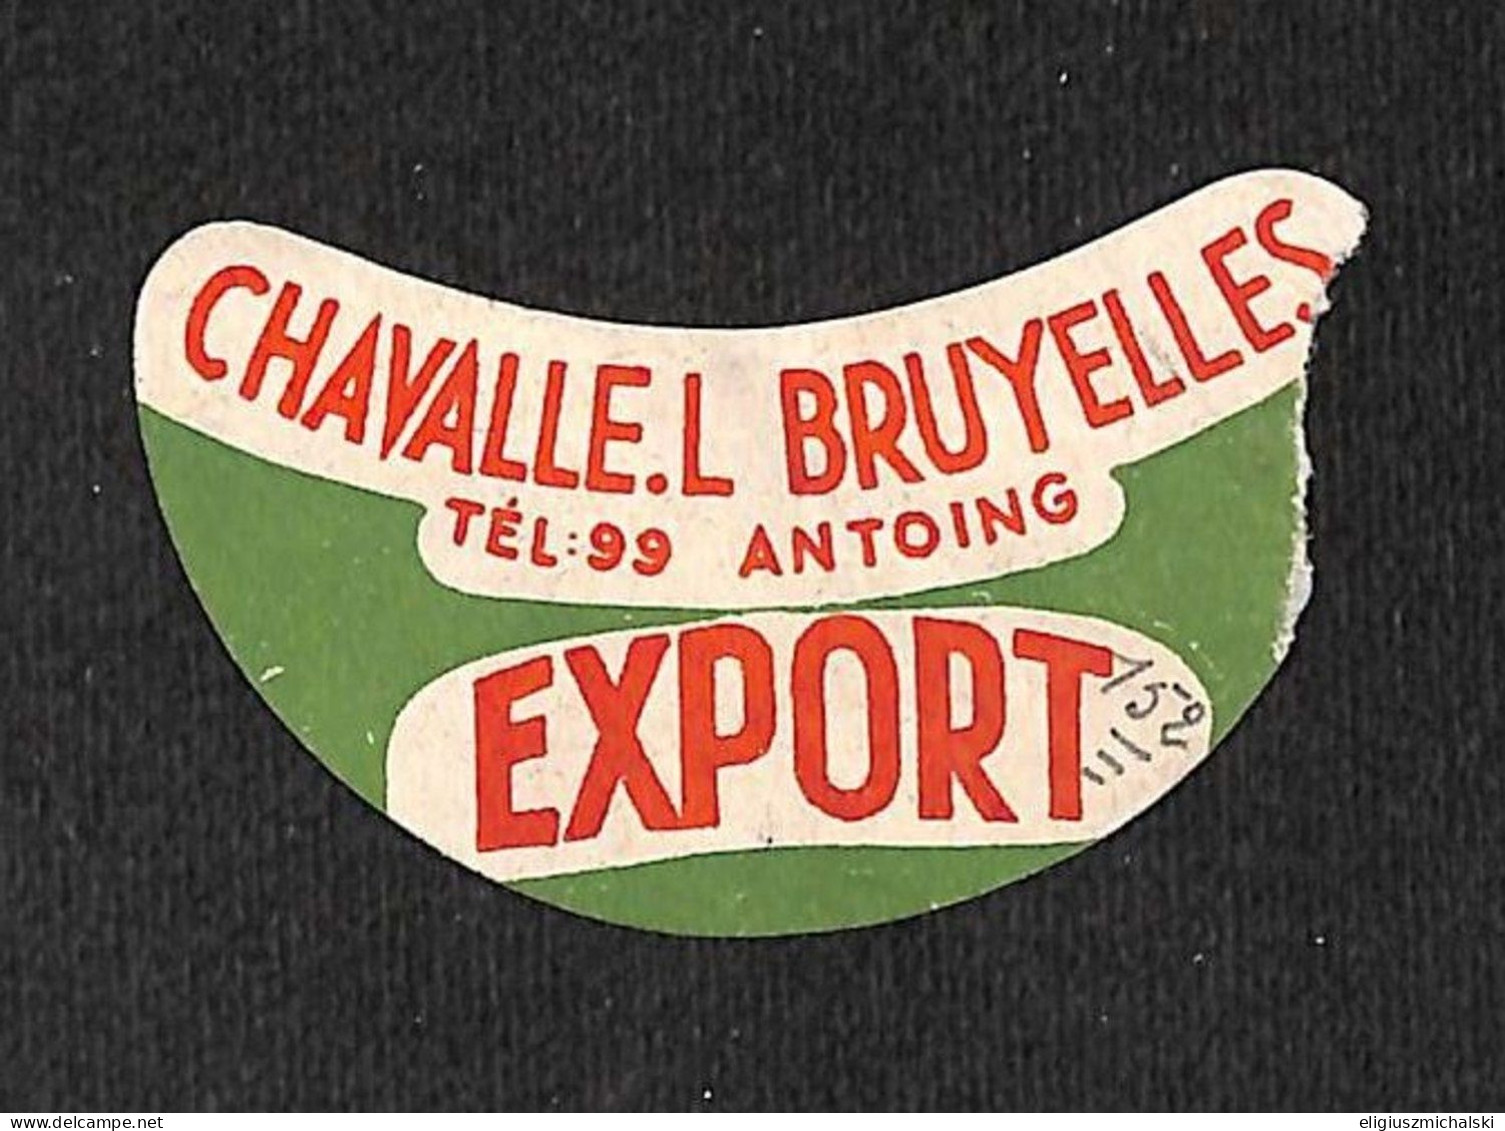 Antoing - Chavalle L. Bruyelles Export Découpe !!! (vente Unique) - Beer